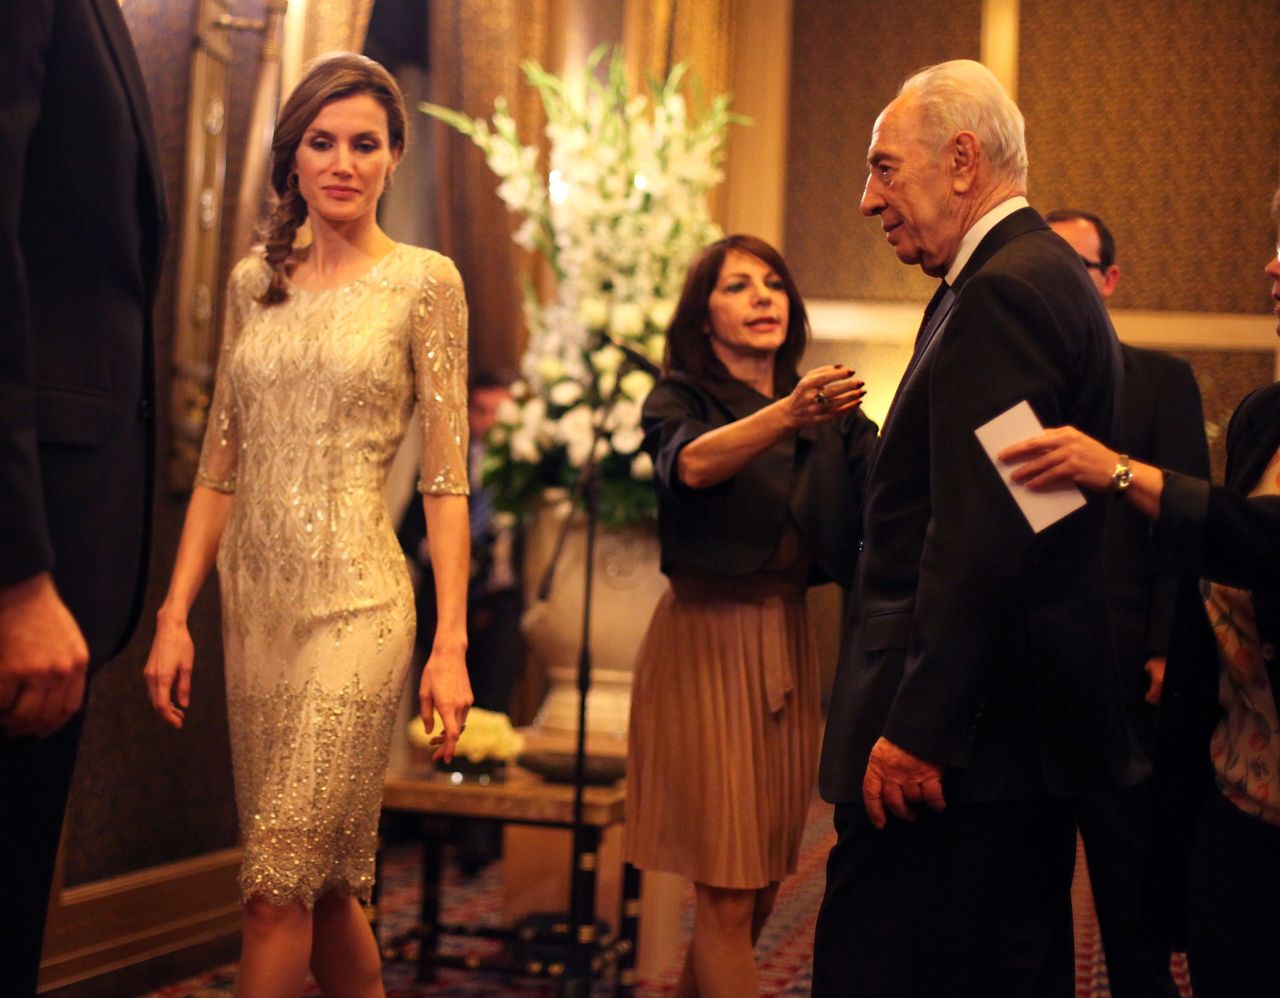 Letizia, princesa de Asturias, quien antes fue reportera de televisión, se conoce por su recatado y elegante estilo. Aquí aparece junto al presidente israelí Shimon Peres durante una visita al país en 2011.